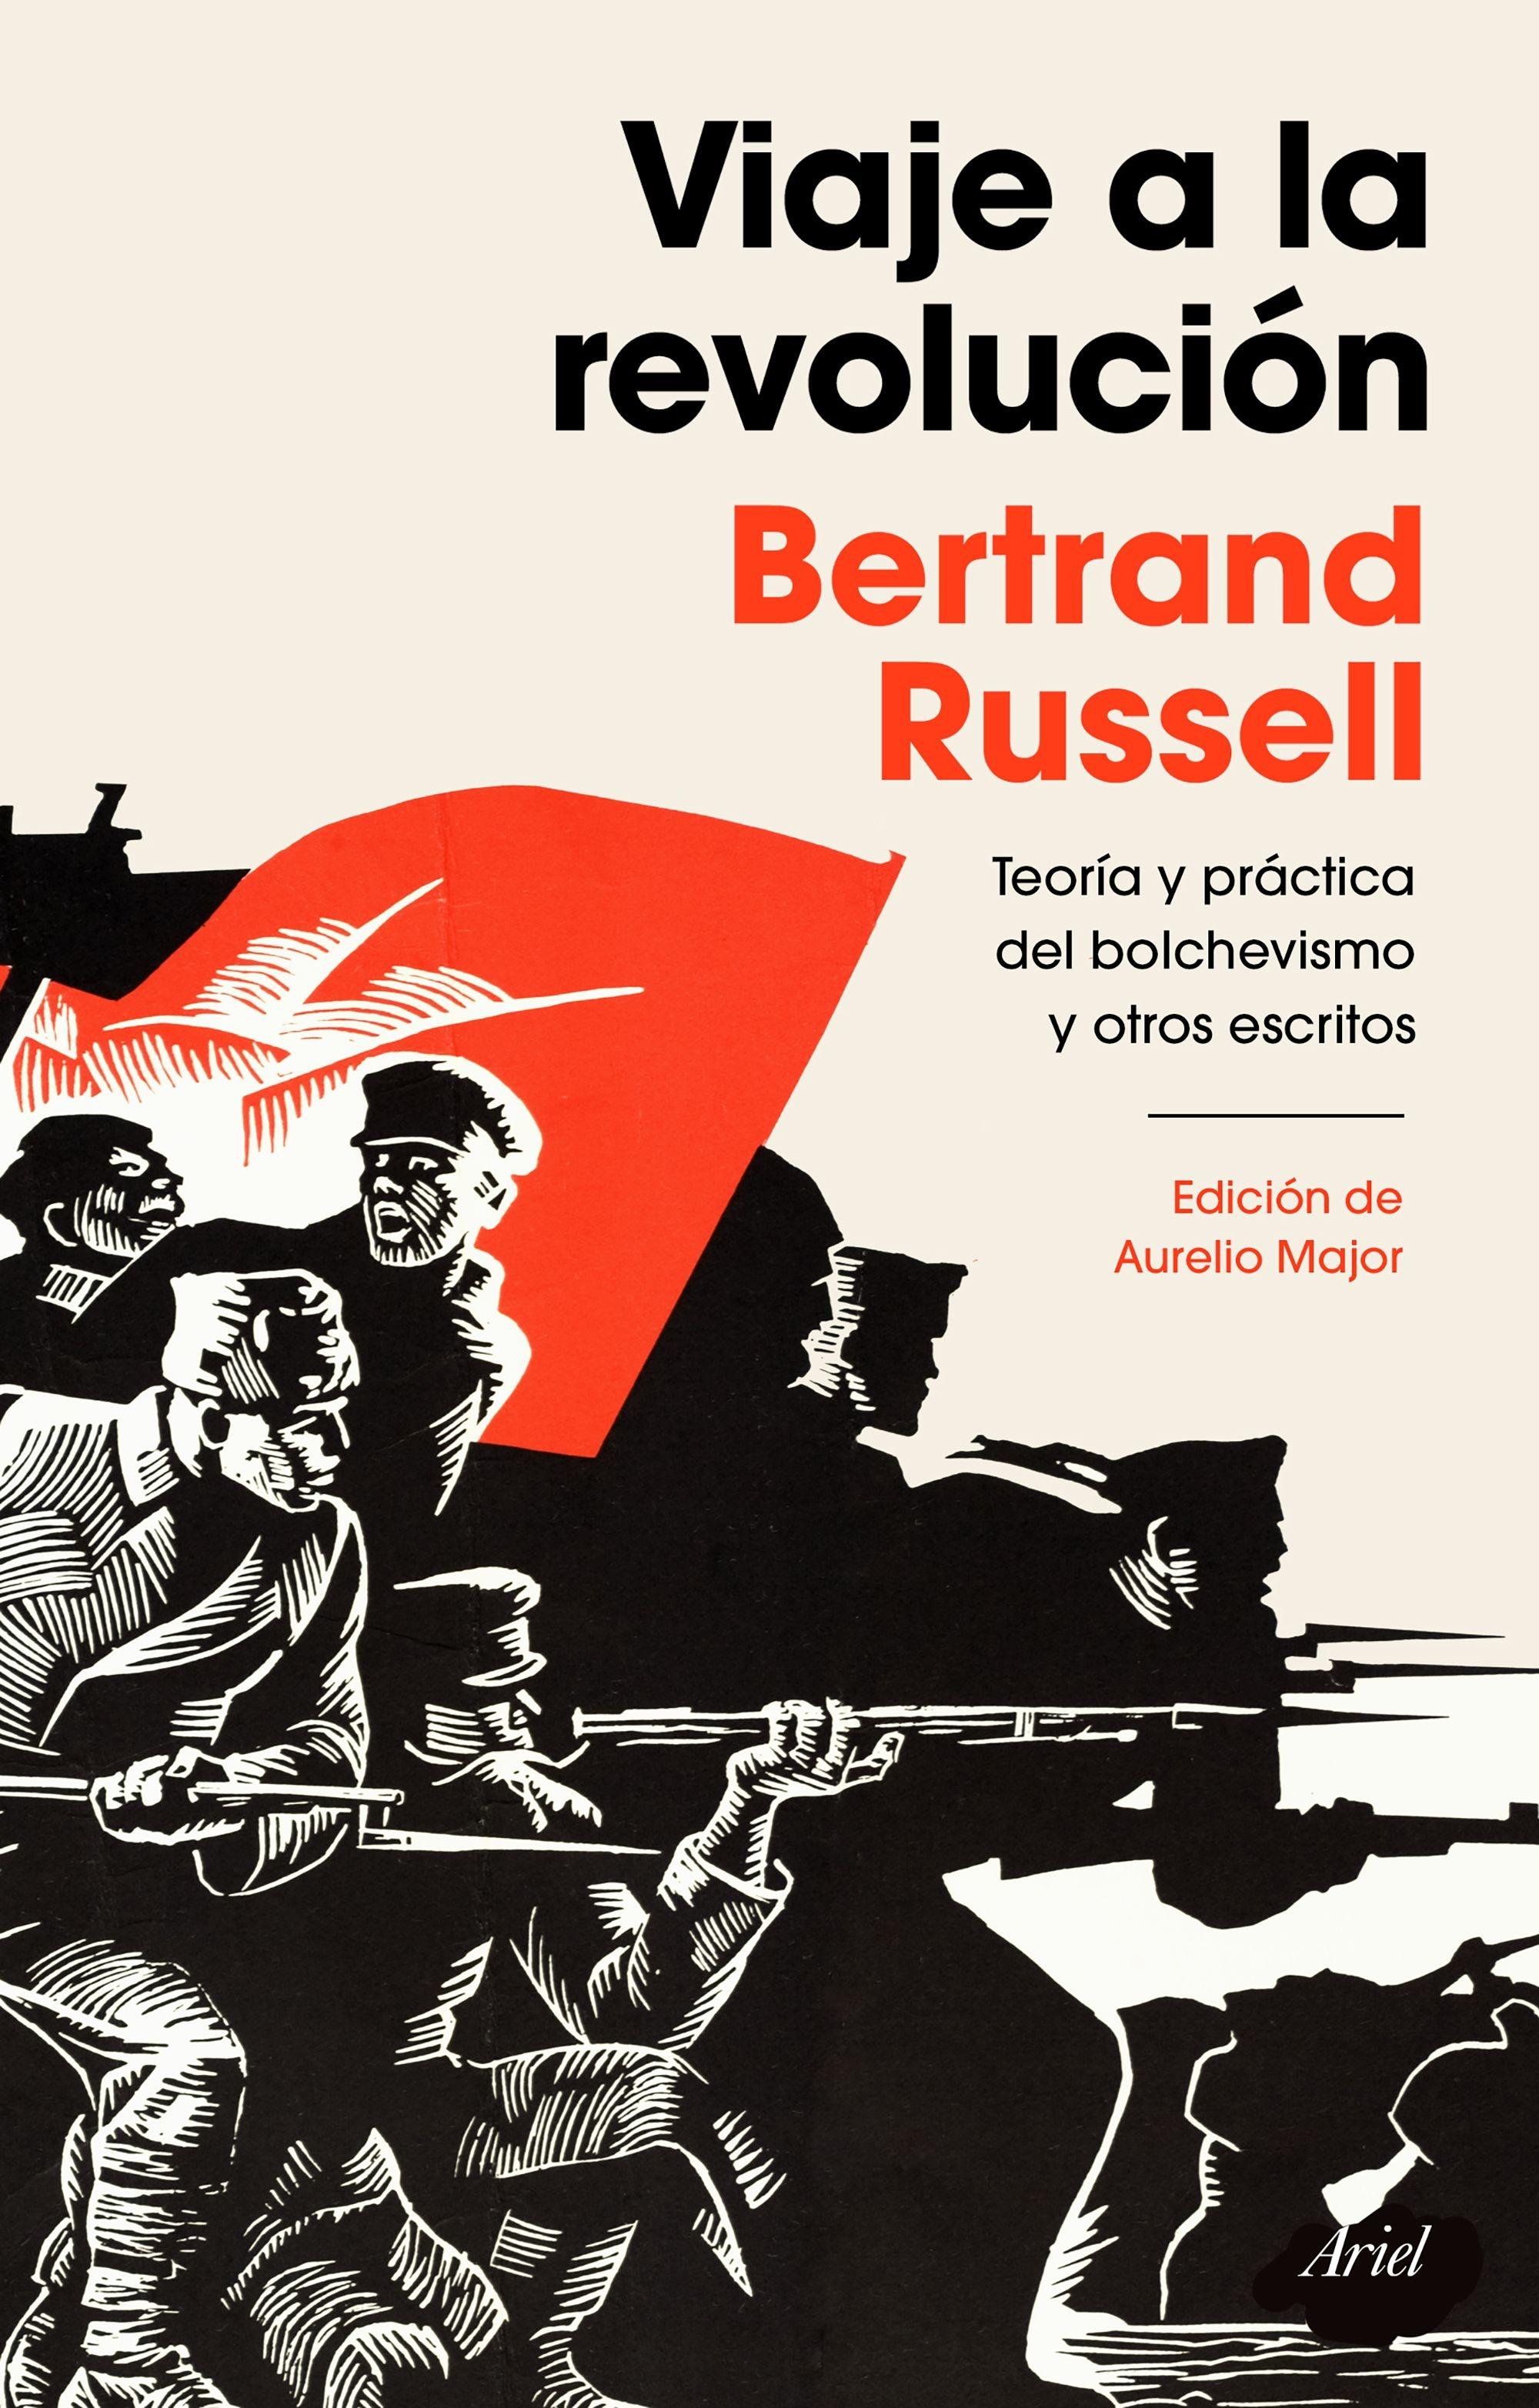 Viaje a la revolución "Práctica y teoría del bolchevismo y otros escritos. Edición de Aurelio M"